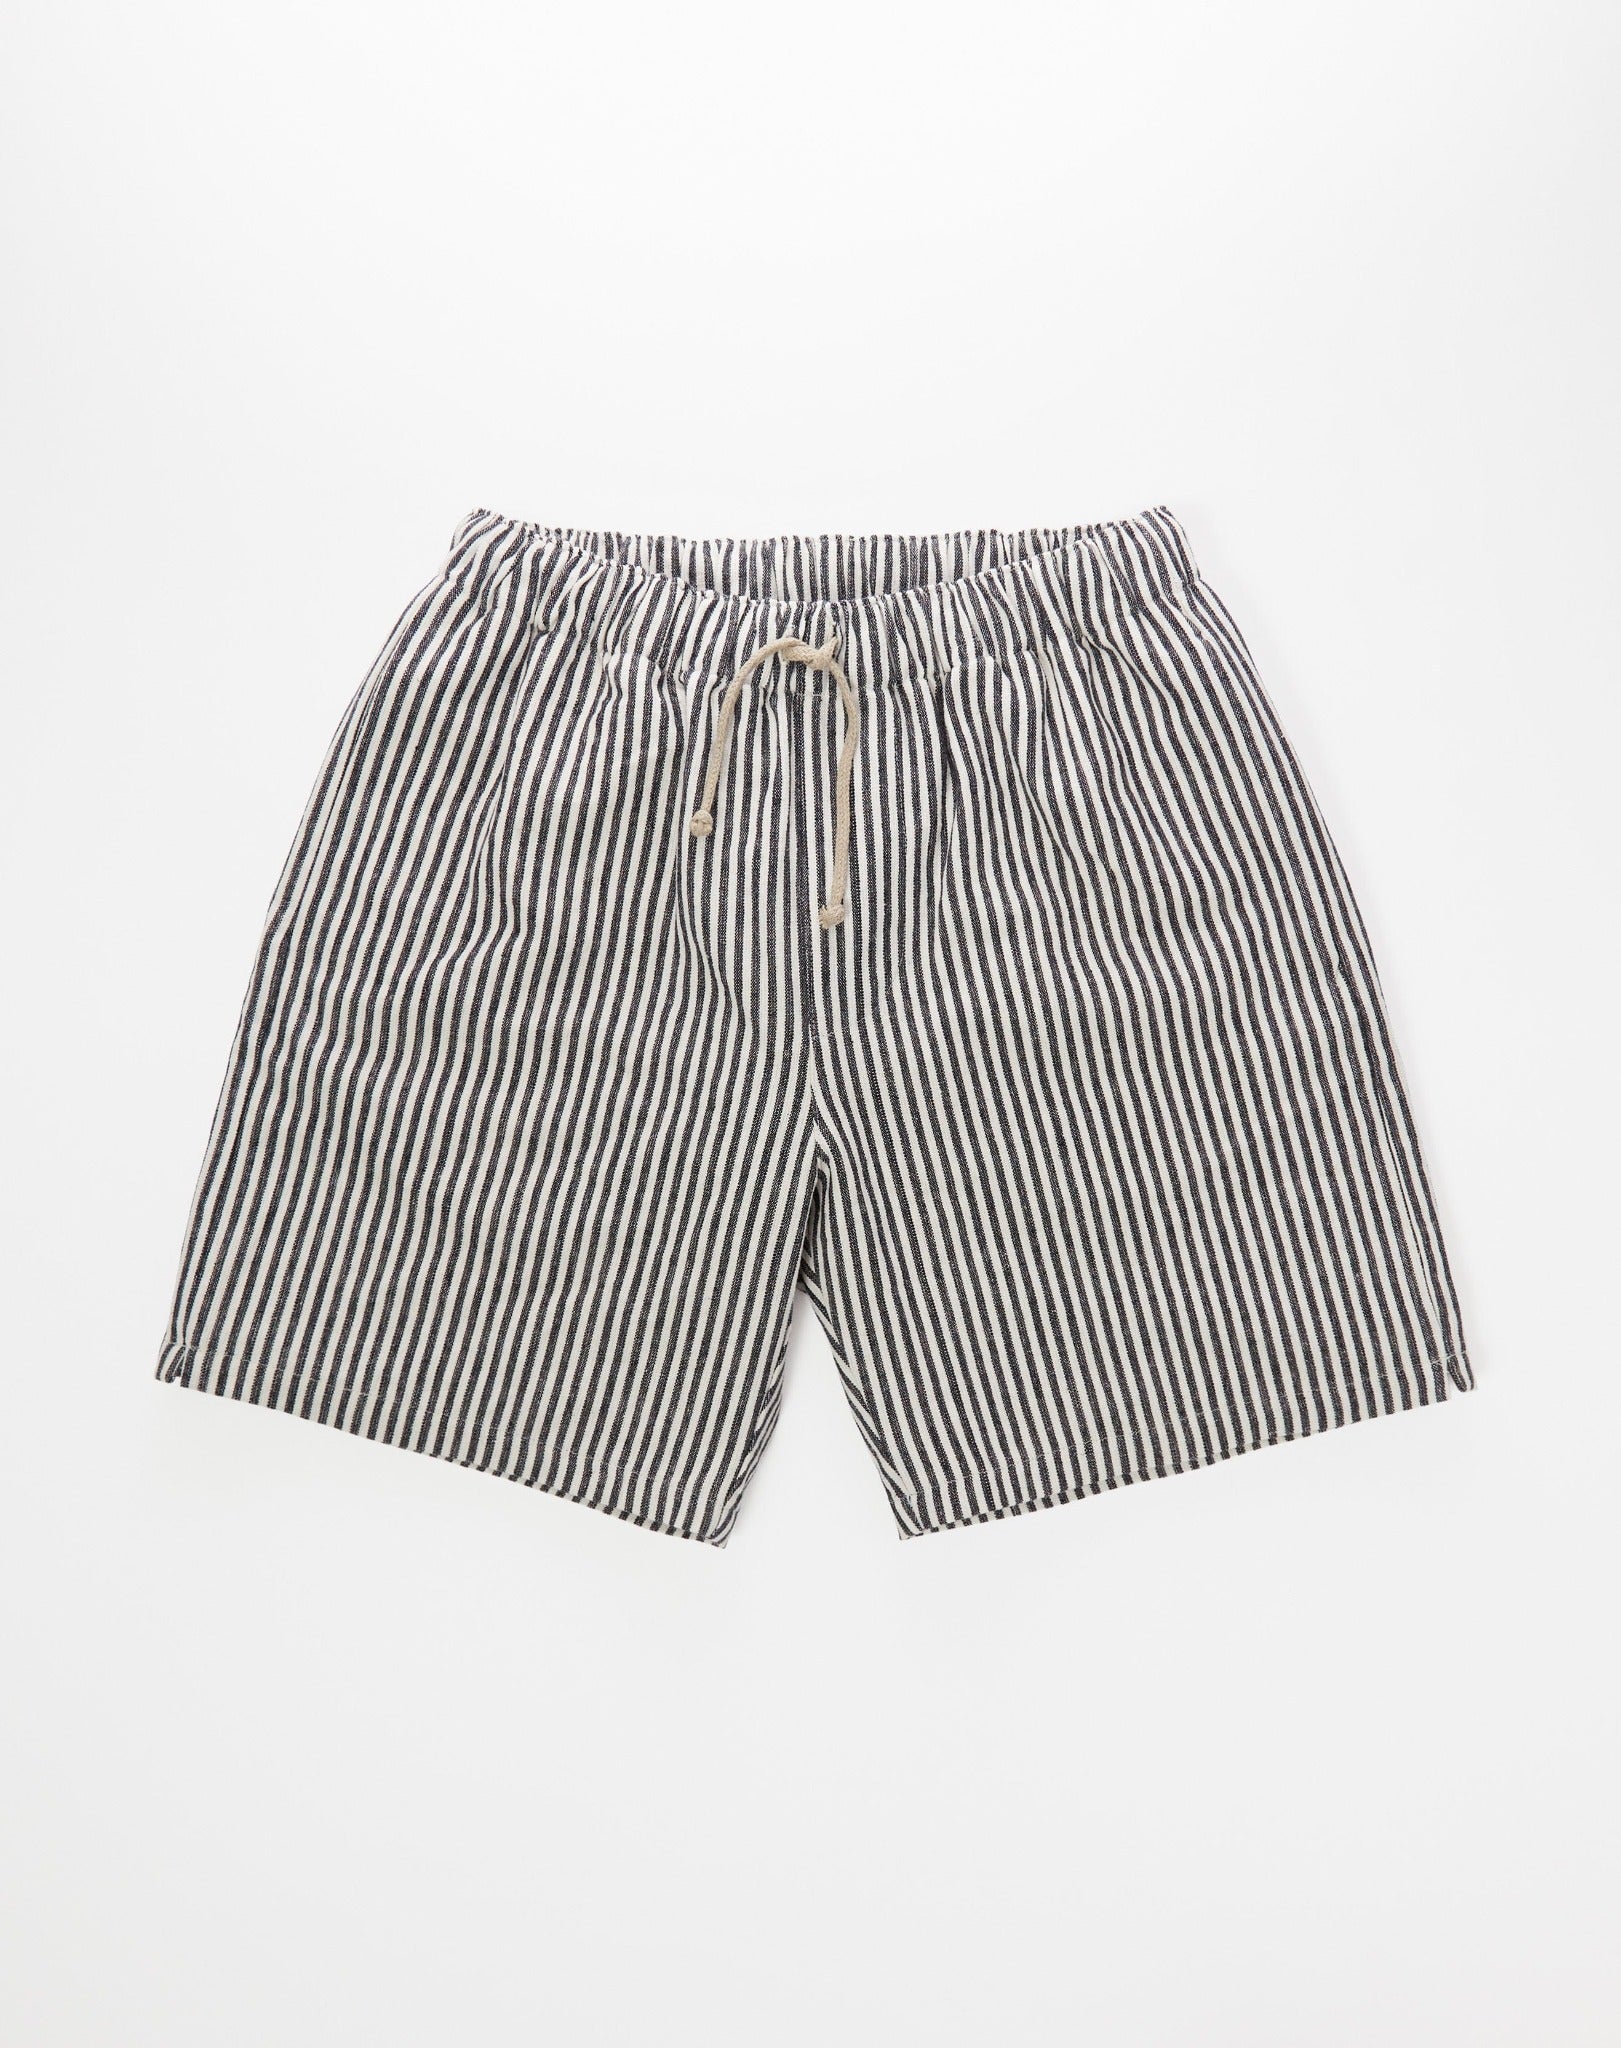 The Rockaway Shorts in Striped Hemp